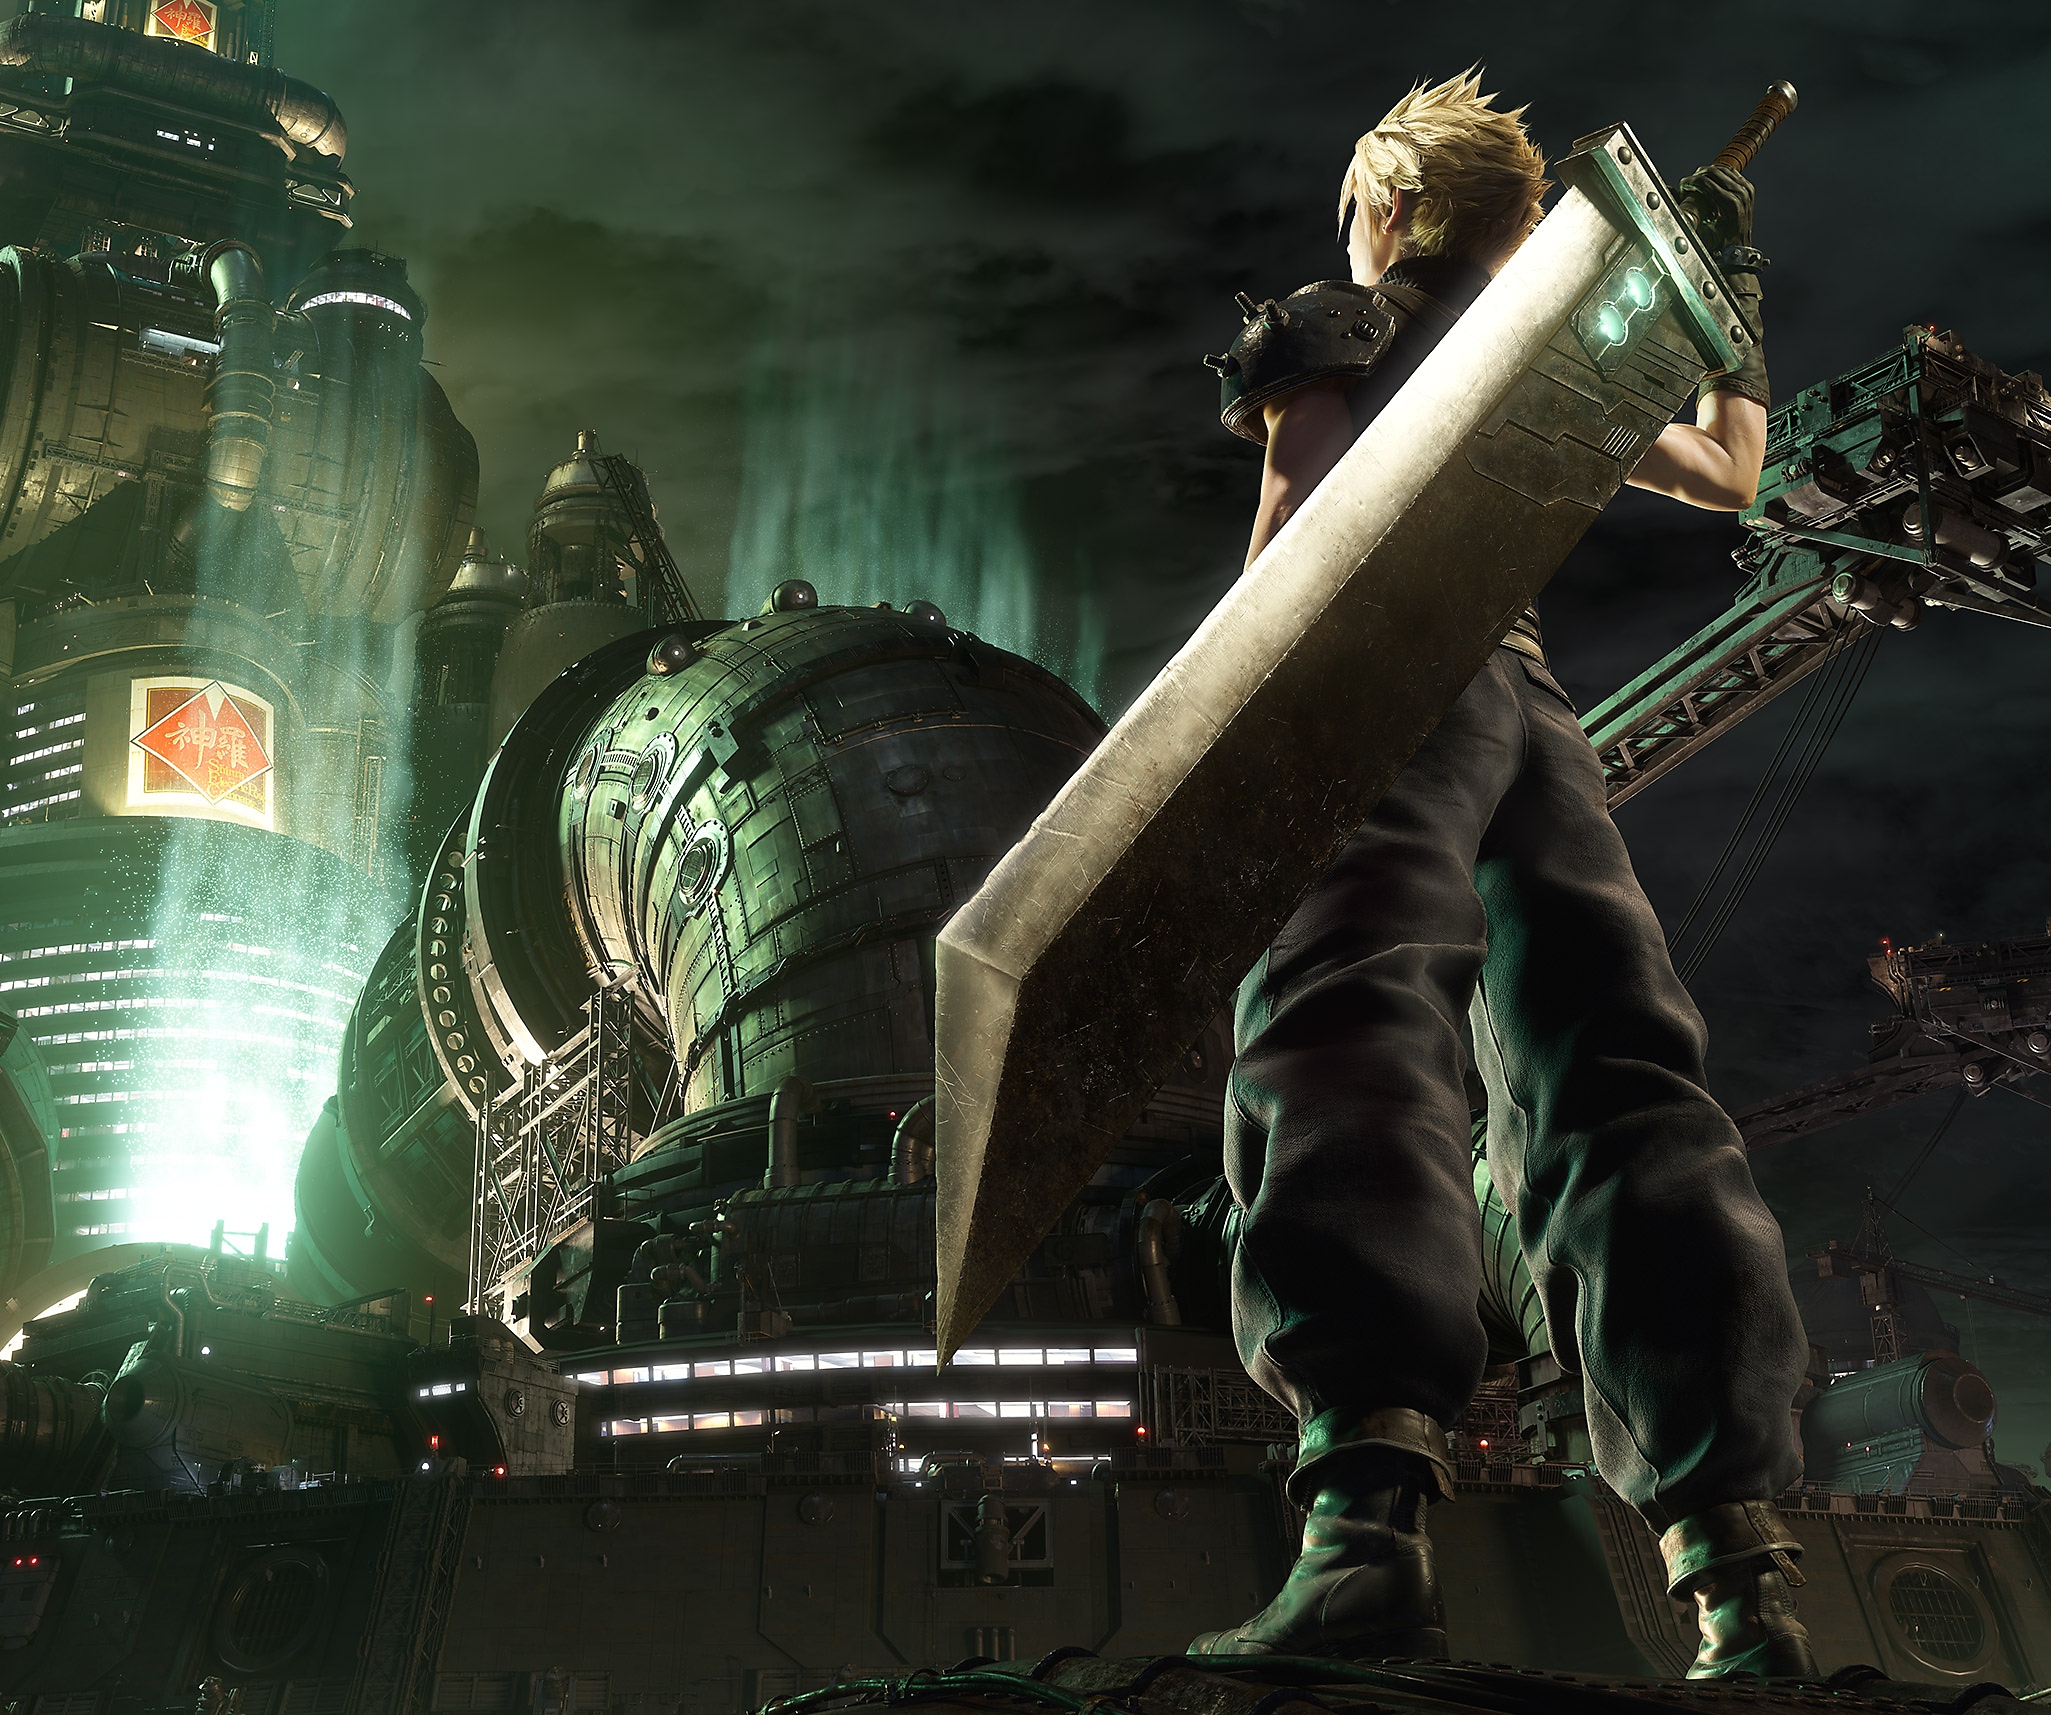 Image de Final Fantasy VII Remake - Cloud, le personnage principal, devant le quartier général de la Shinra.